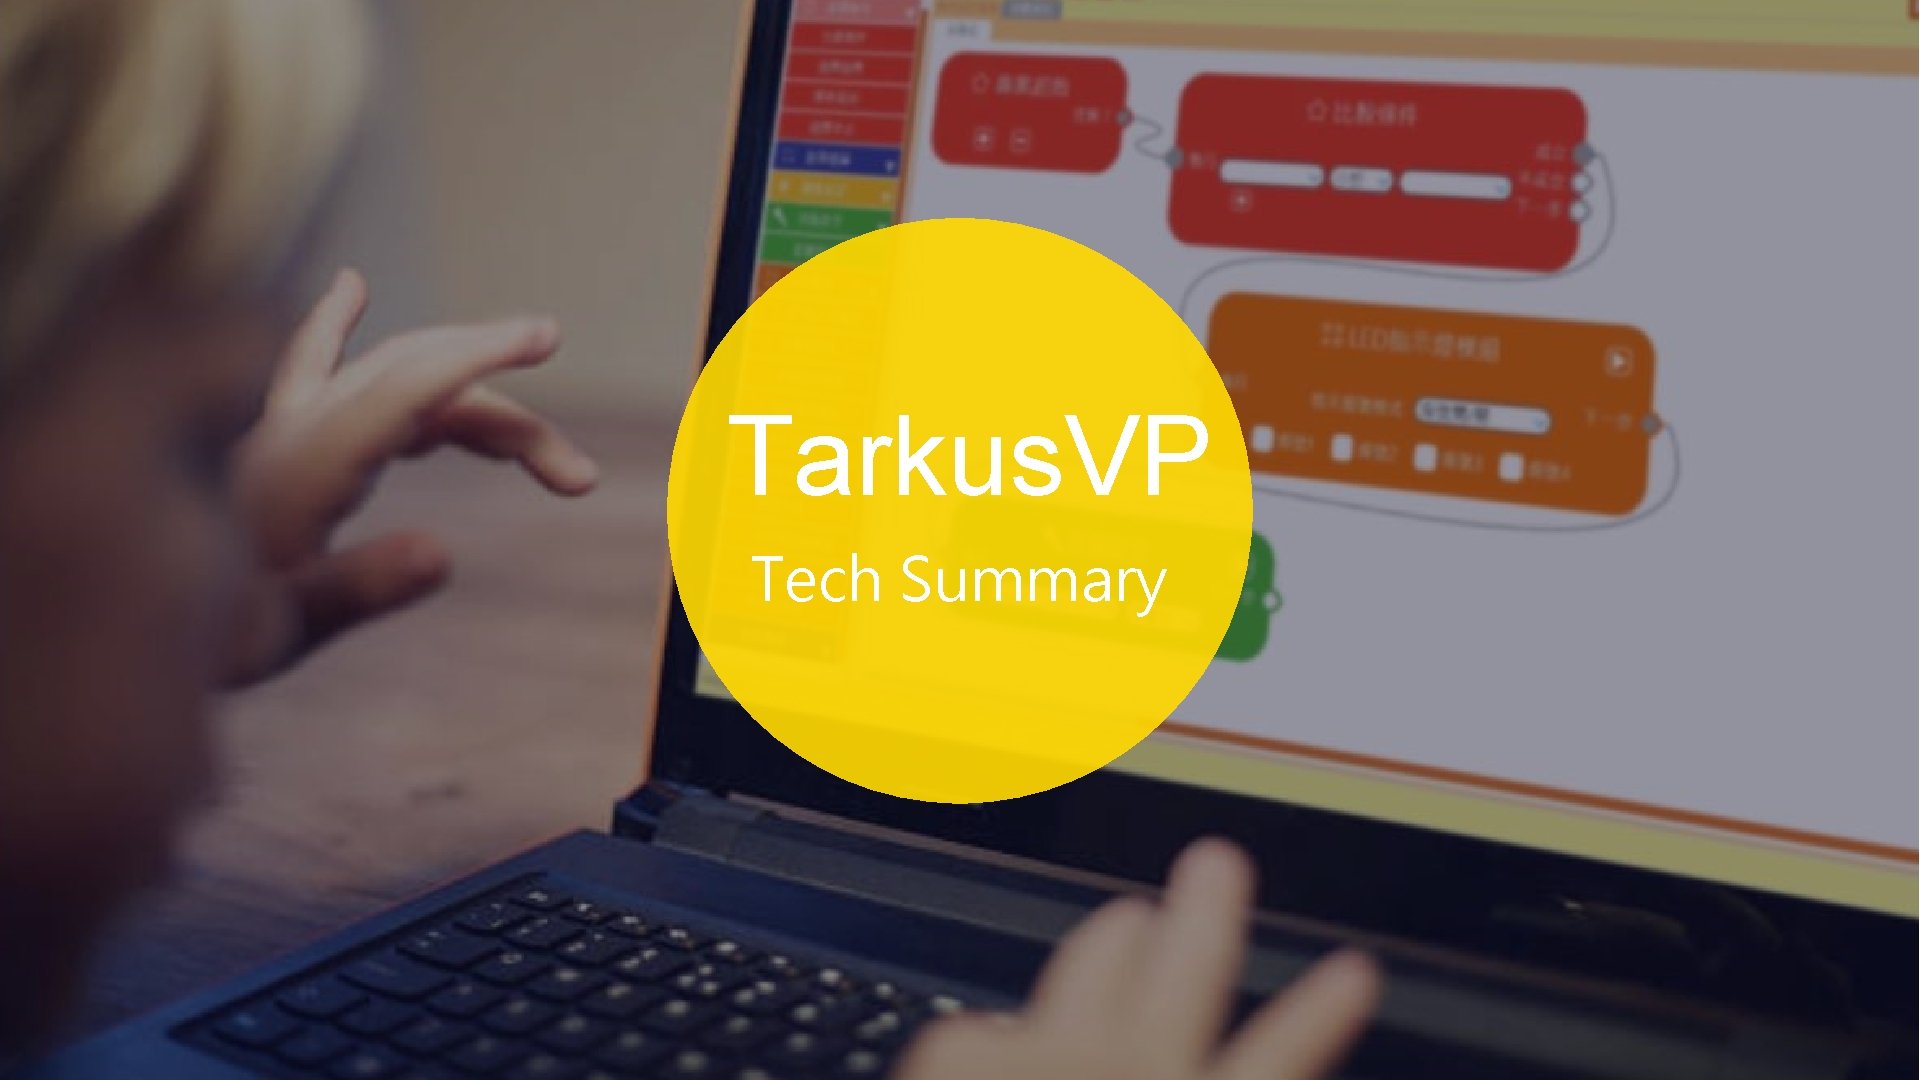 Tarkus. VP Tech Summary 2 